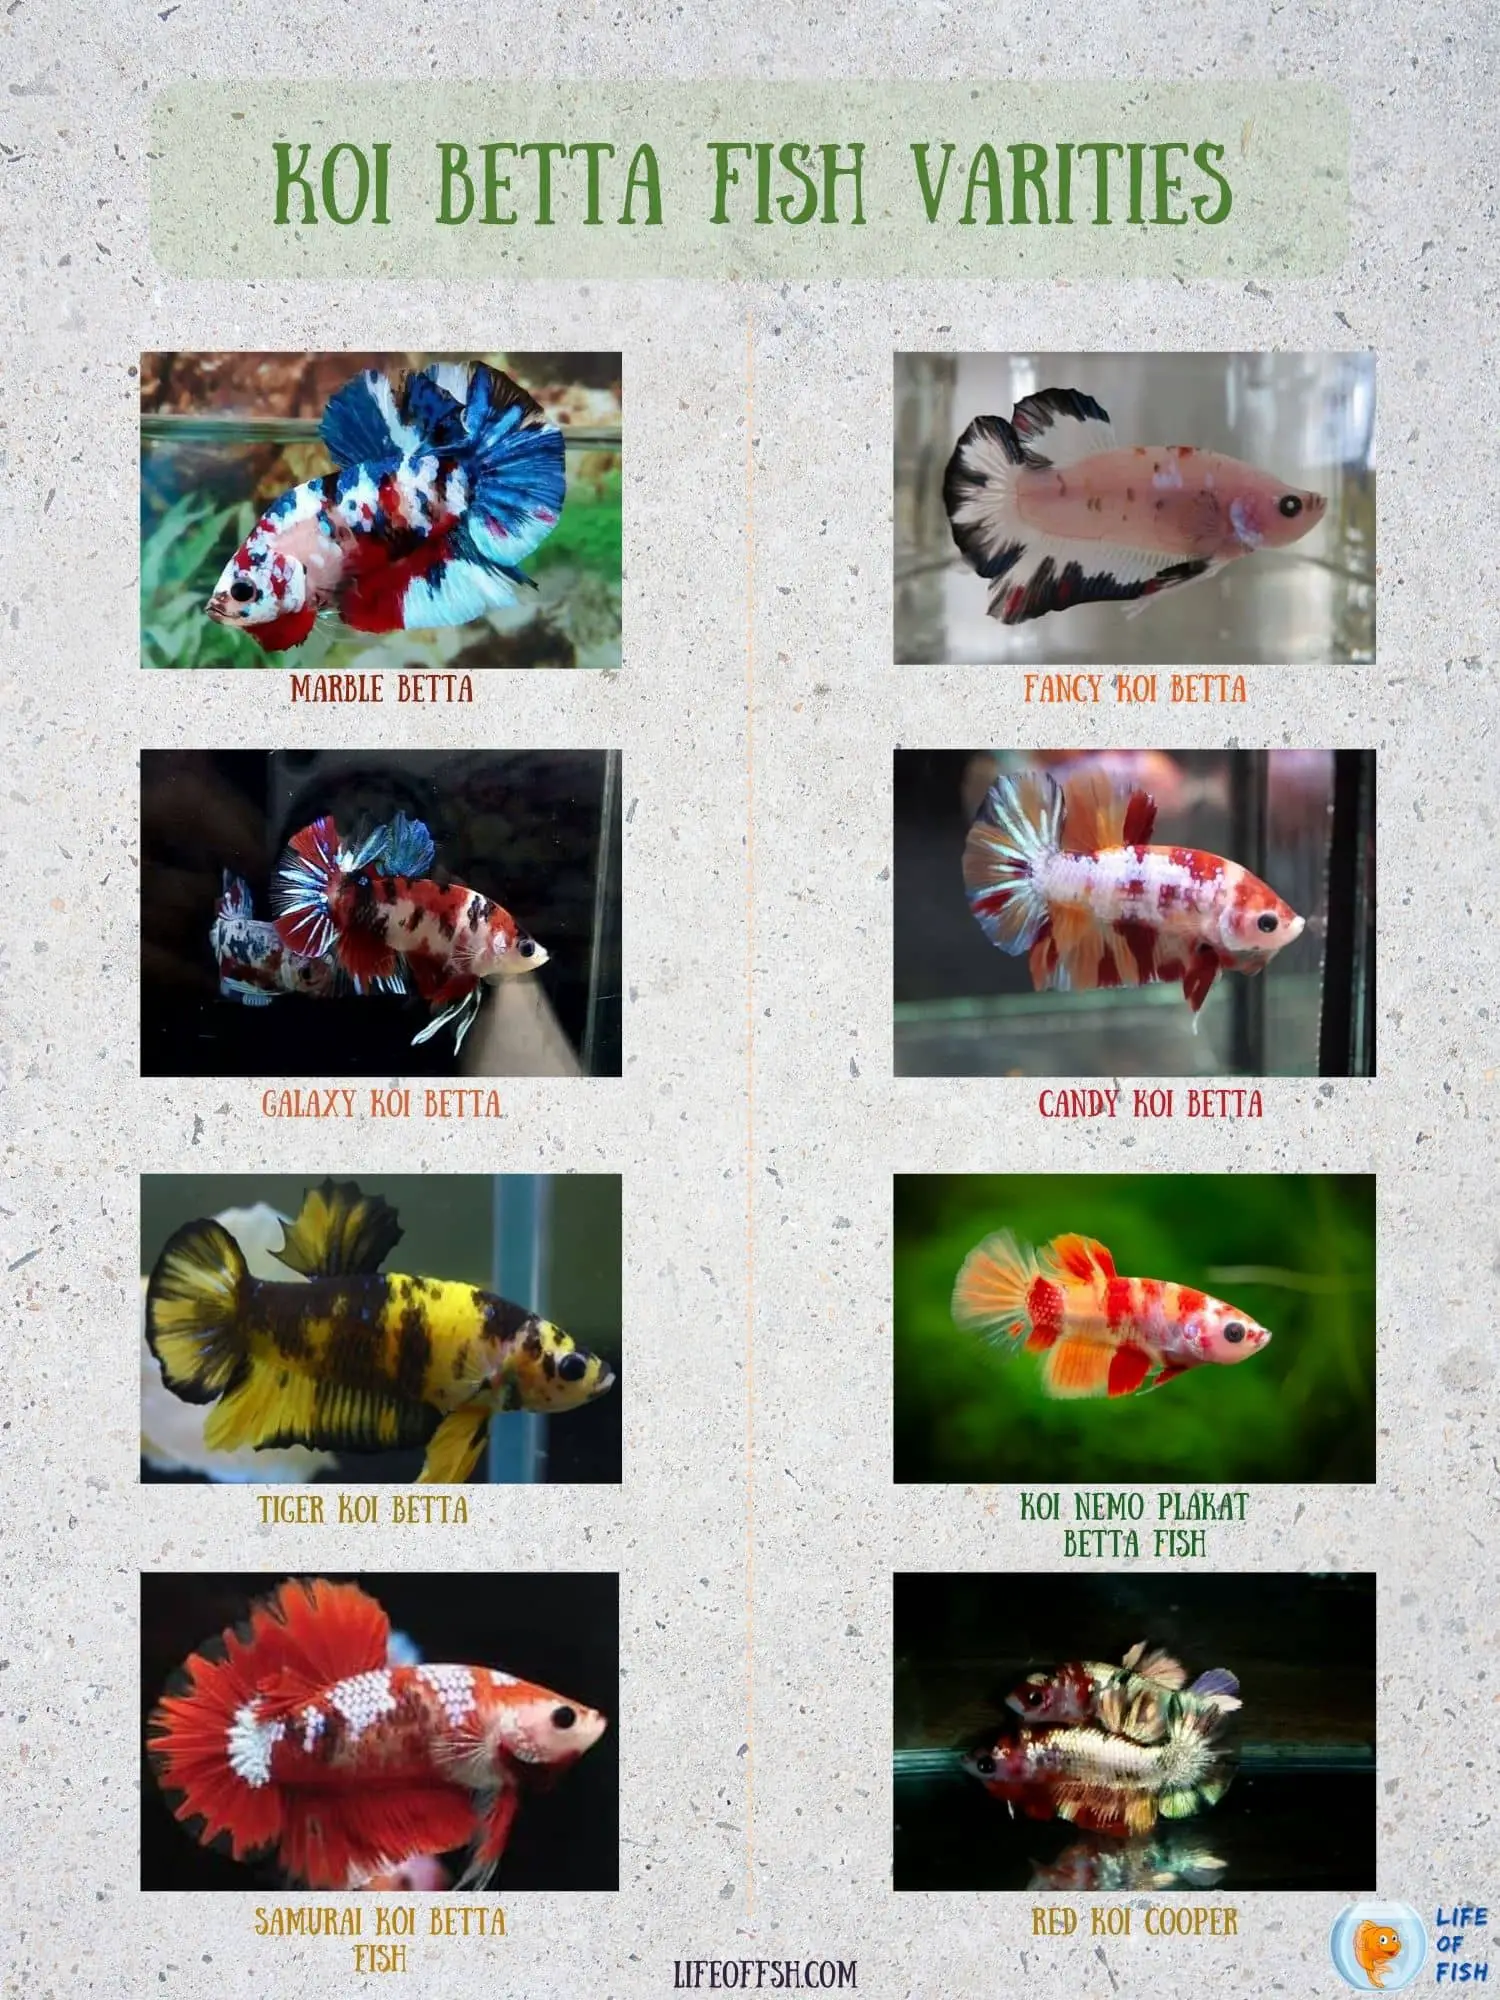 koi betta fish infographic 